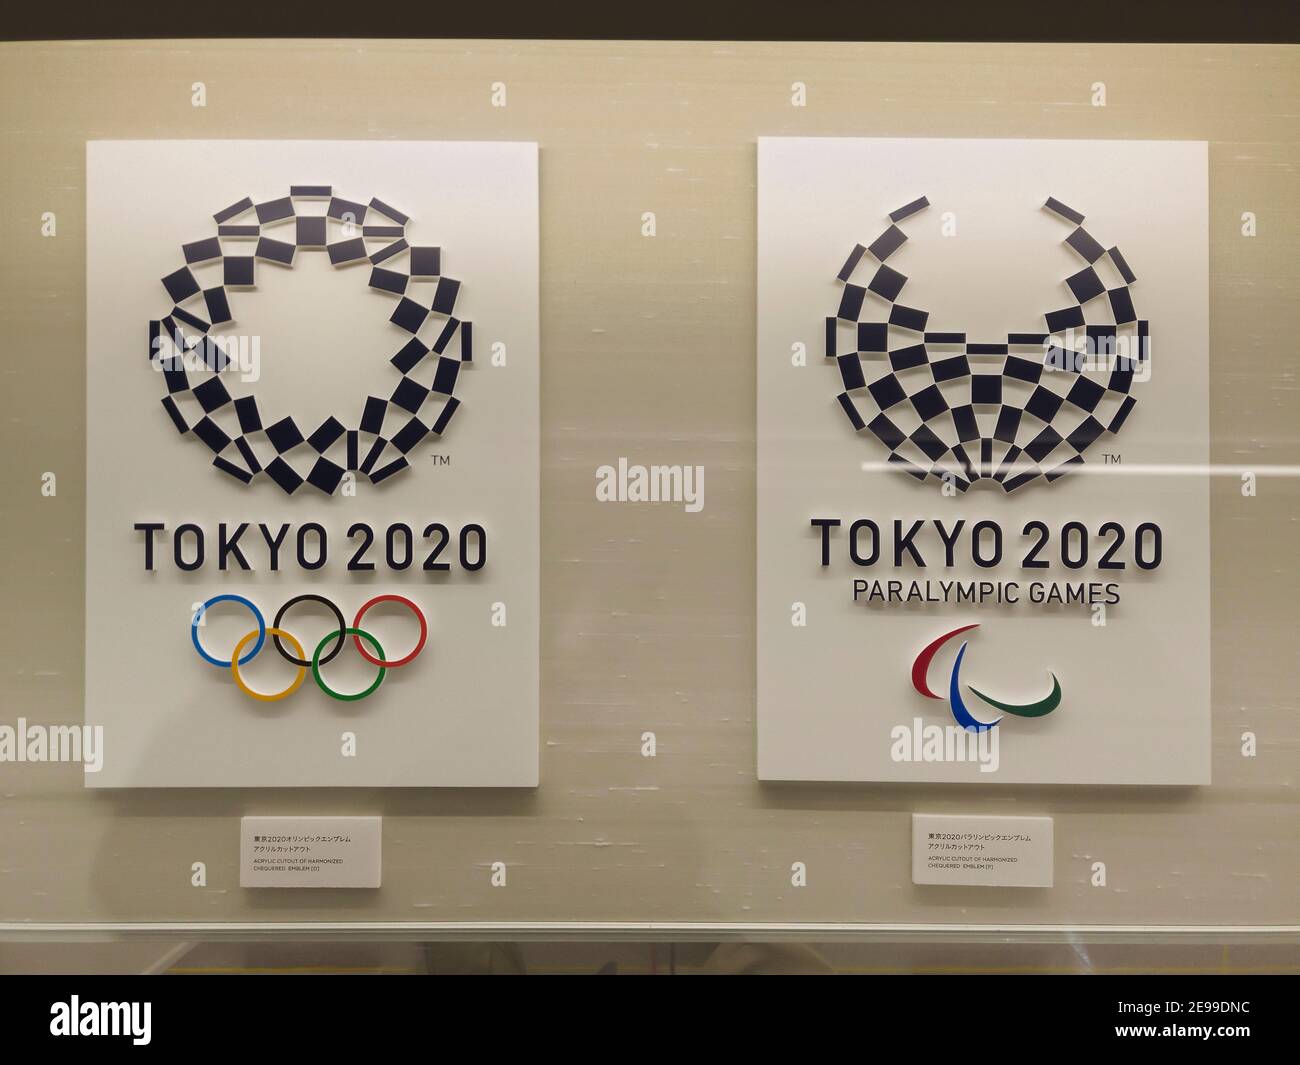 tokio, japan - januar 15 2020: Acryl-Ausschnitt des harmonisierten karierten Emblems des Logos der Olympischen Sommerspiele 2020 und paralympics in Tokio entworfen Stockfoto